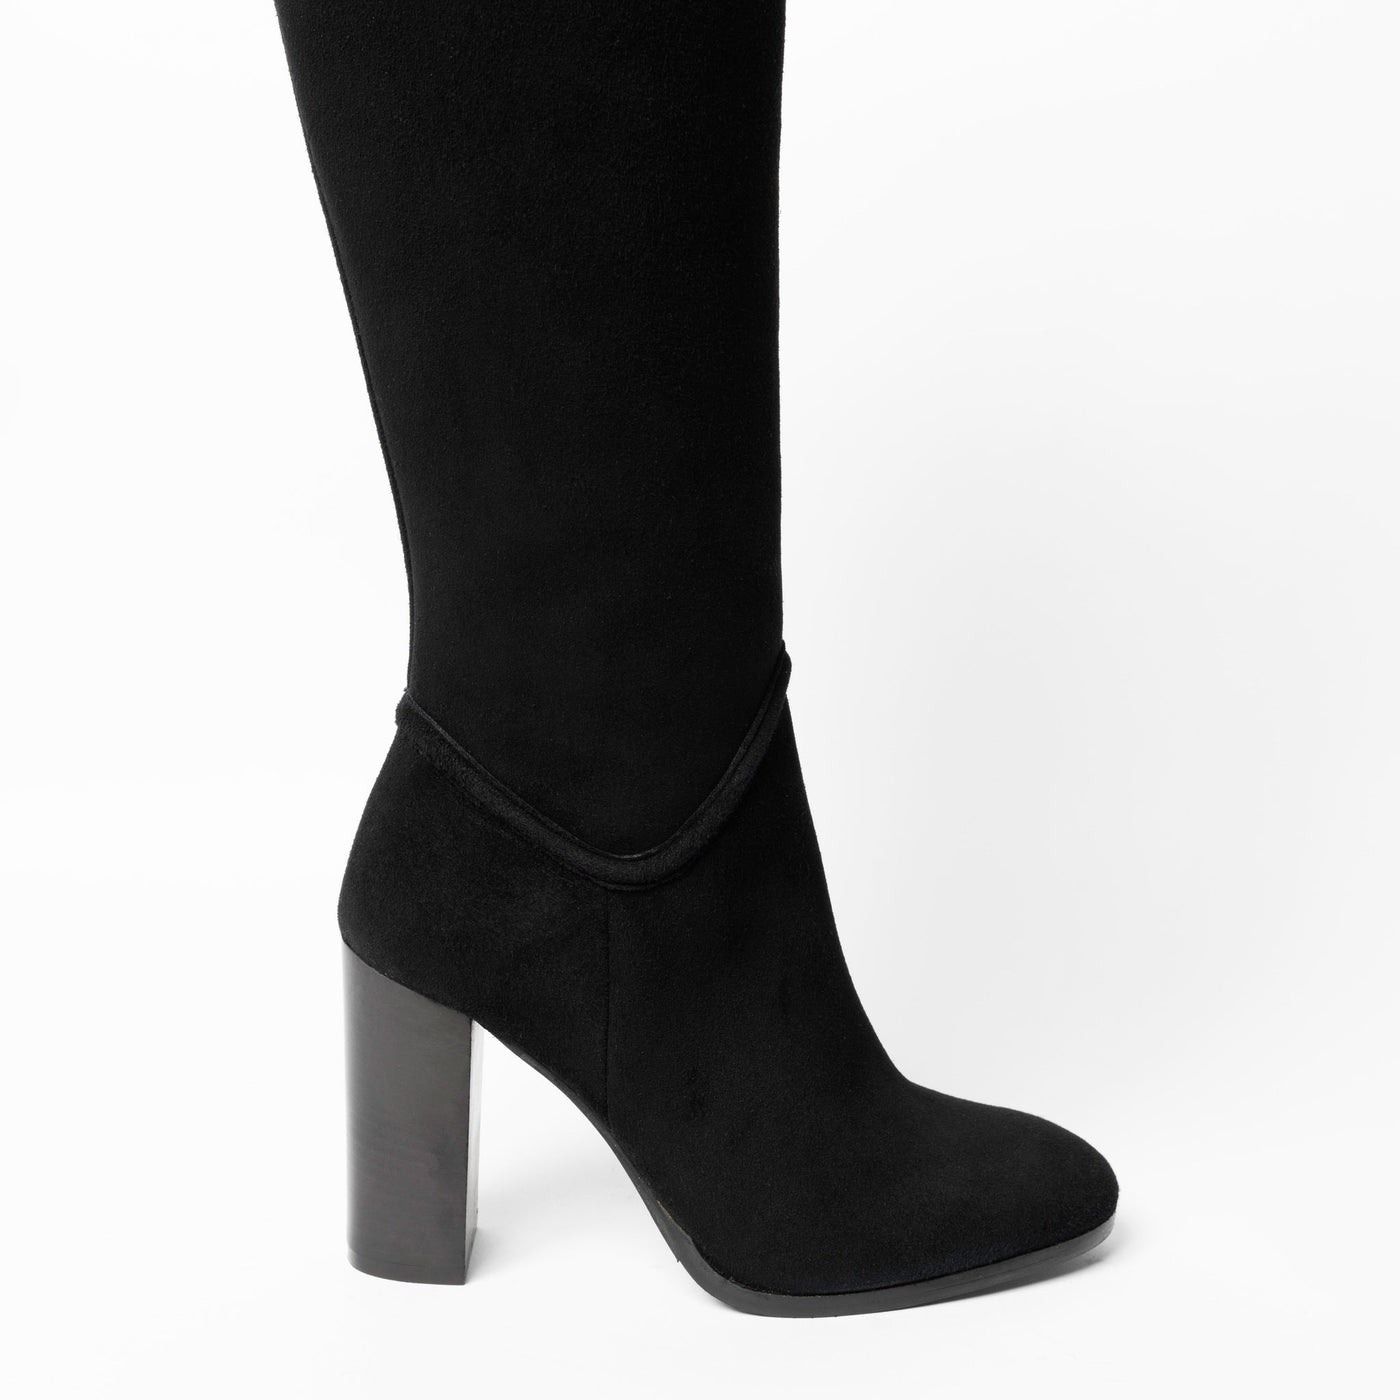 Knee-high black suede boots with 10 mm block heel. 